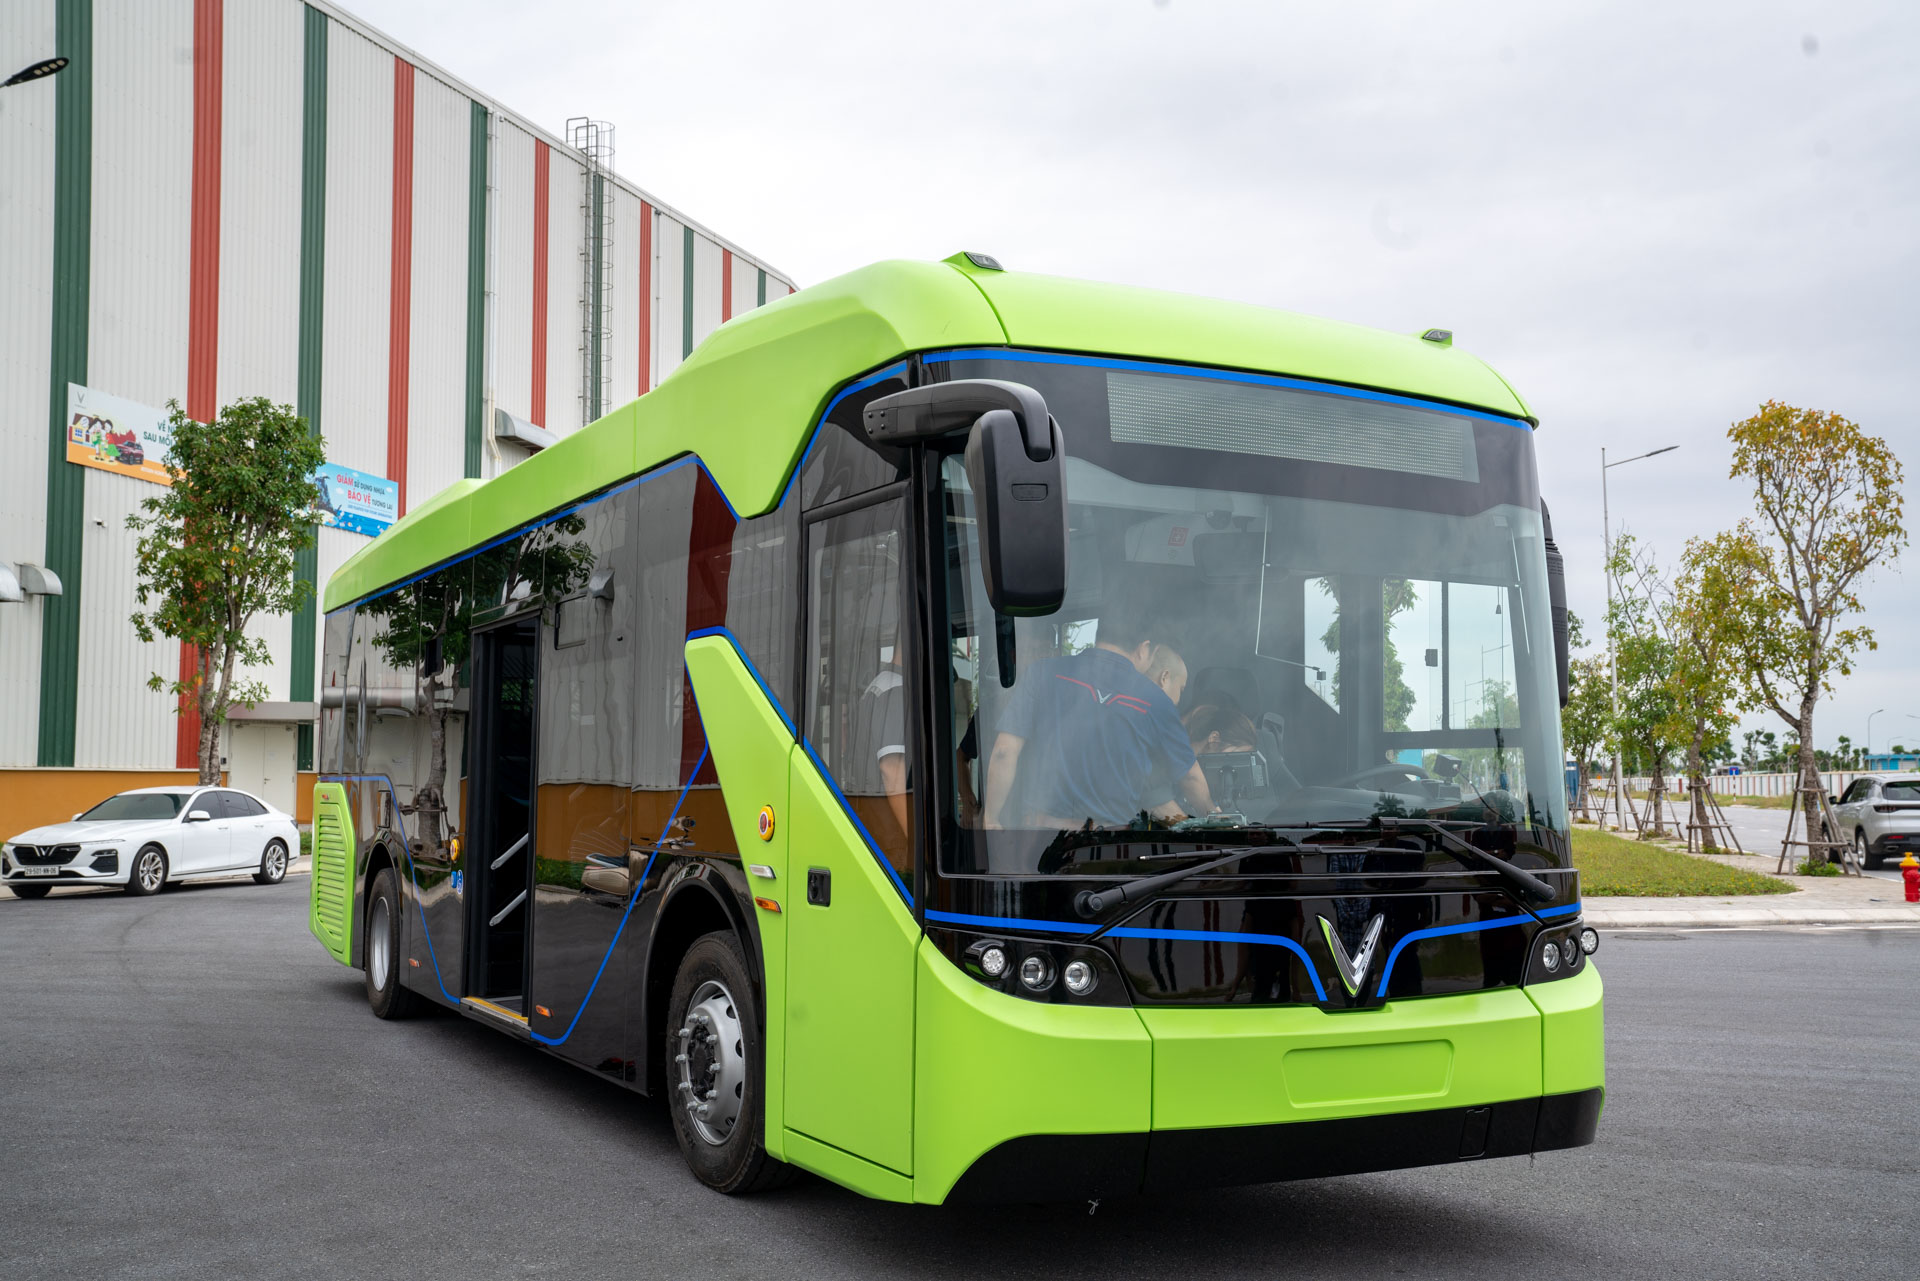 Đến và khám phá thế giới của VinBus - dịch vụ xe buýt thông minh với tiêu chuẩn quốc tế, tốc độ cao và hệ thống giám sát an toàn. Hãy xem hình ảnh để tận hưởng sự thoải mái và tin cậy của VinBus!